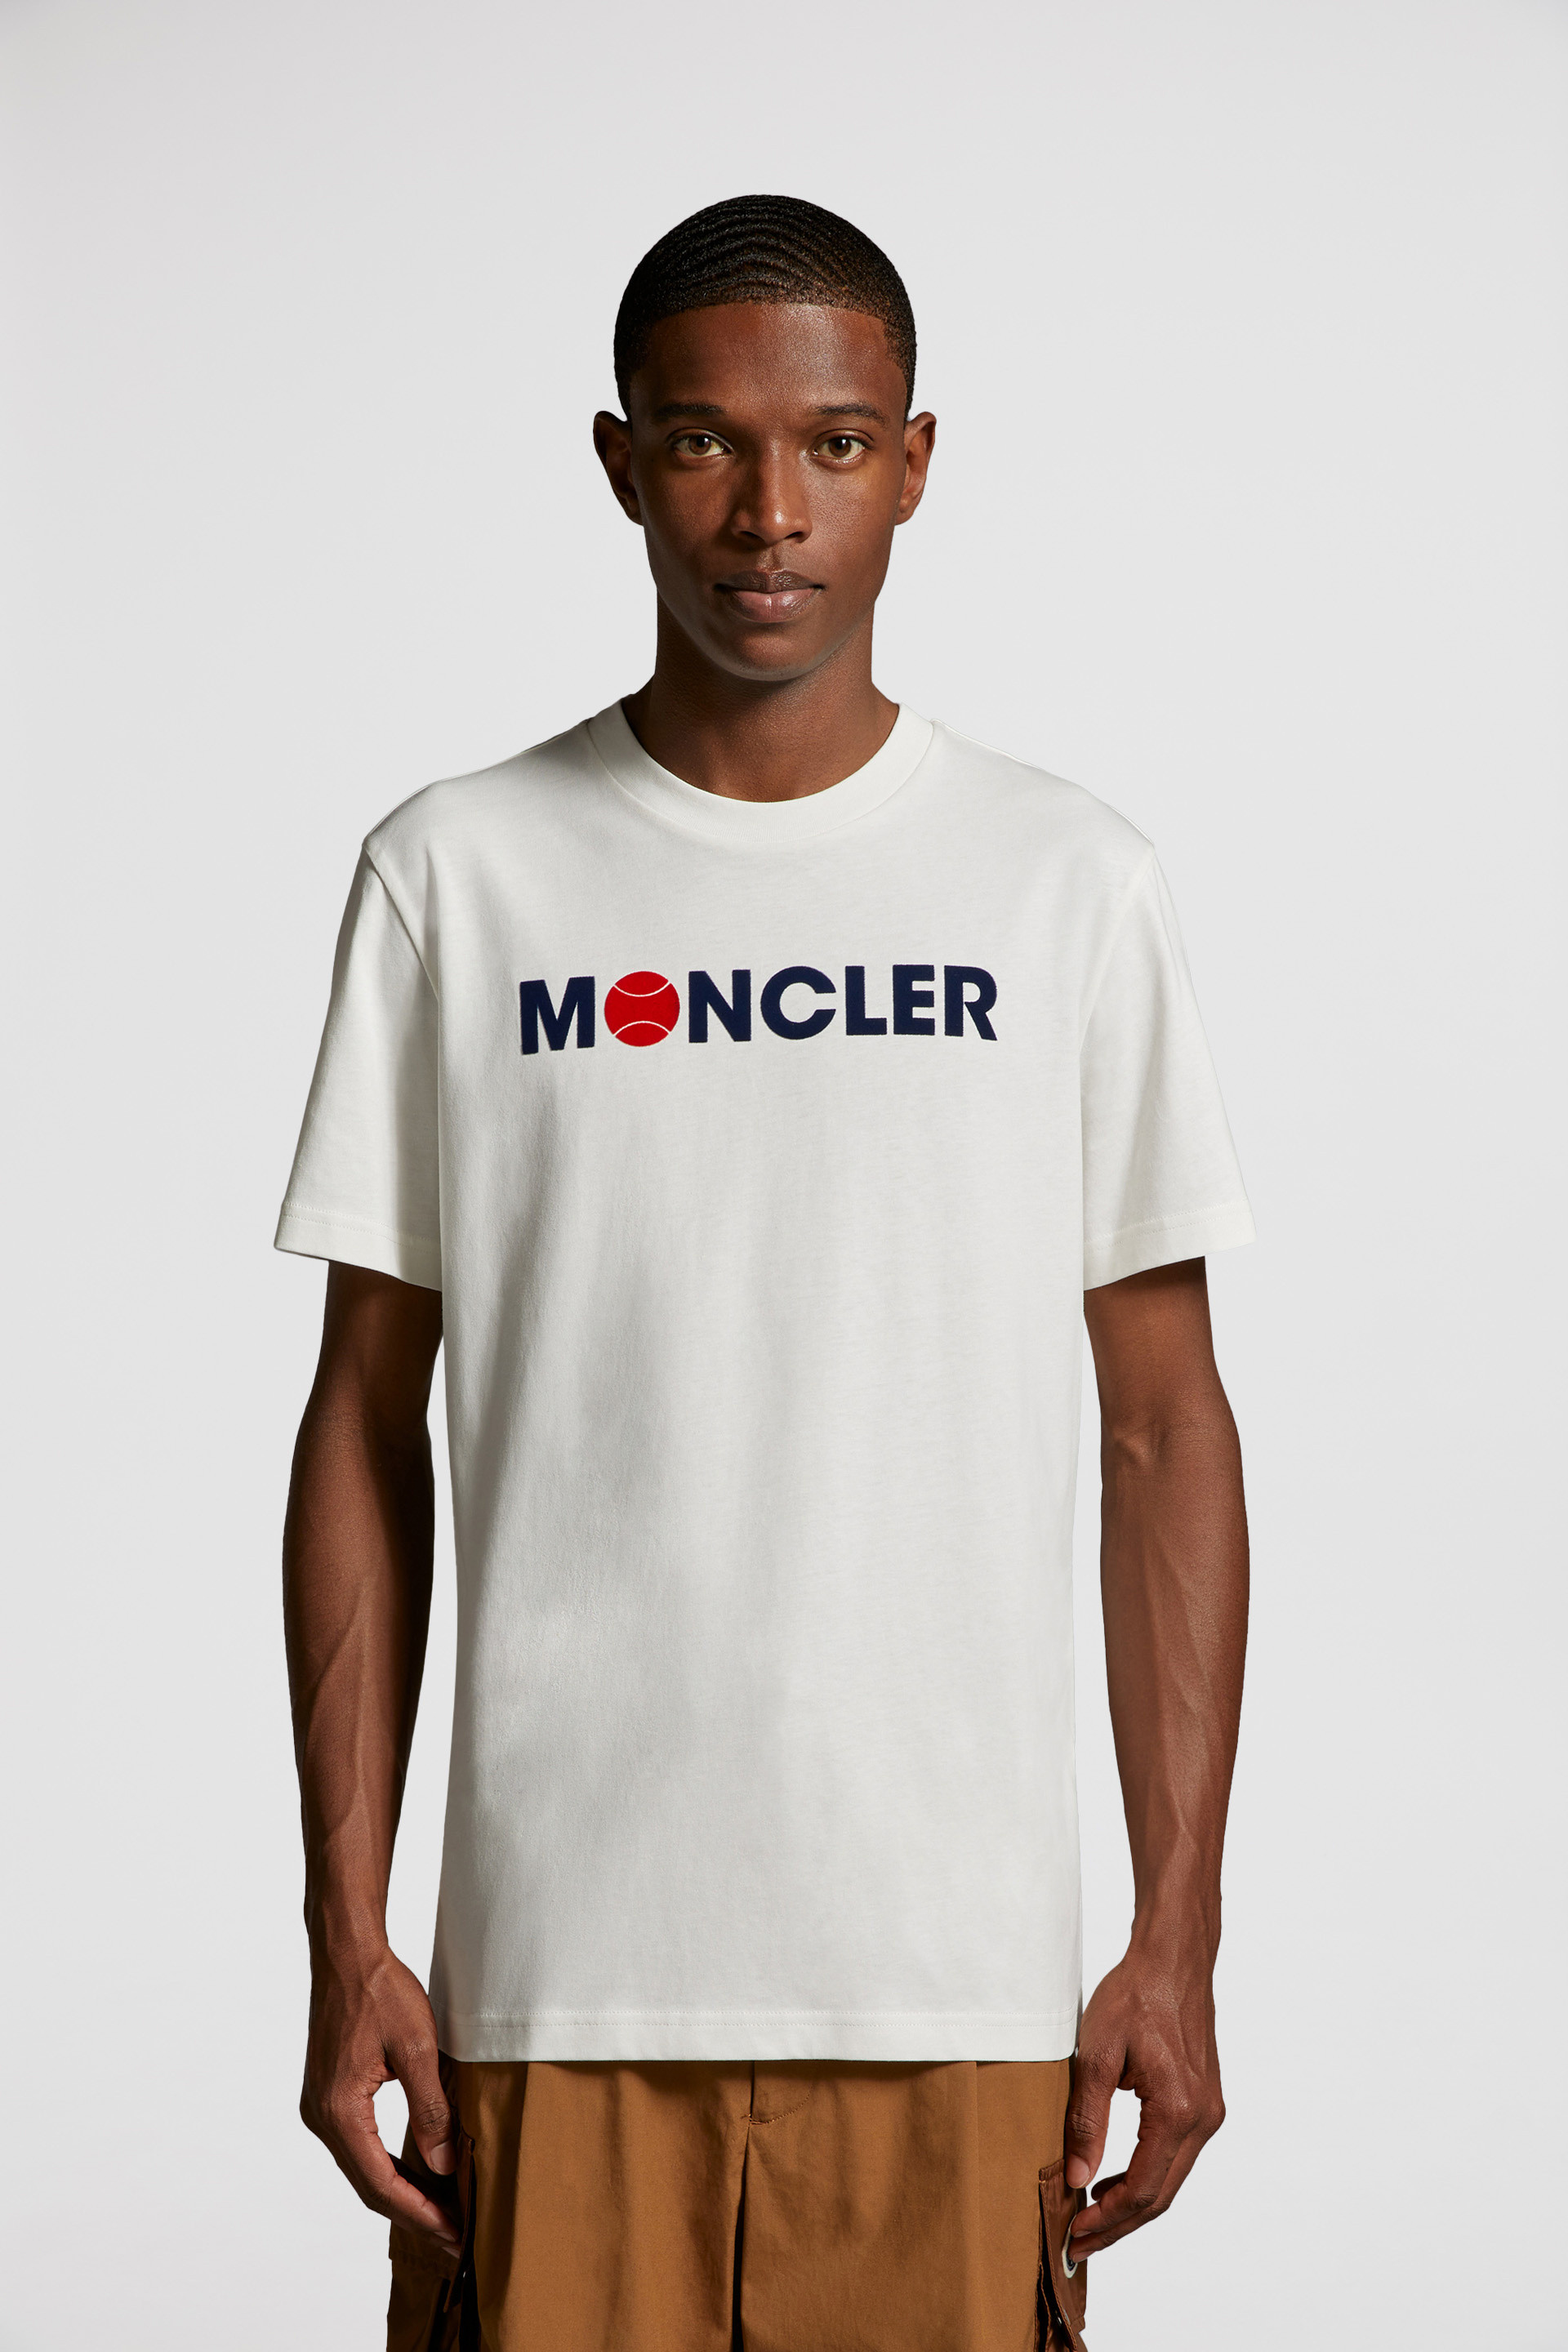 MONCLER モンクレール バイカラー Tシャツ XXLサイズ 大きめ 白 黒管理番号